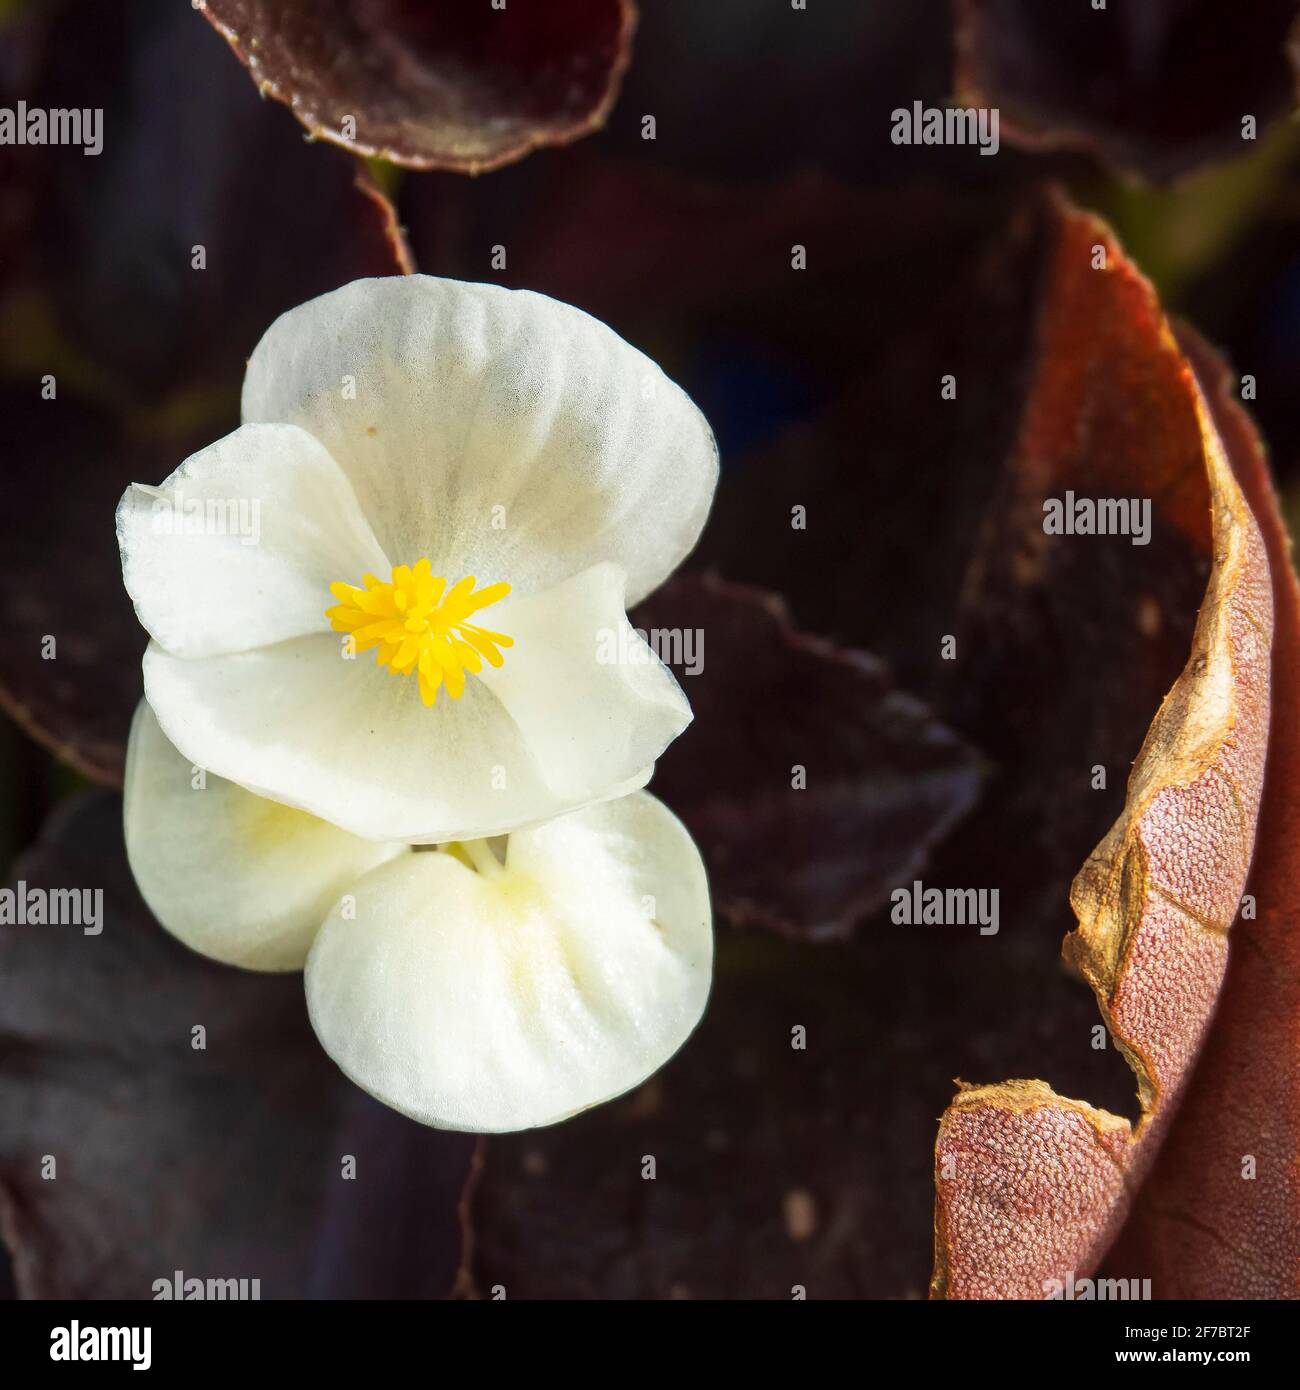 Fiore piccolo con petali bianchi e pistil giallo Foto Stock